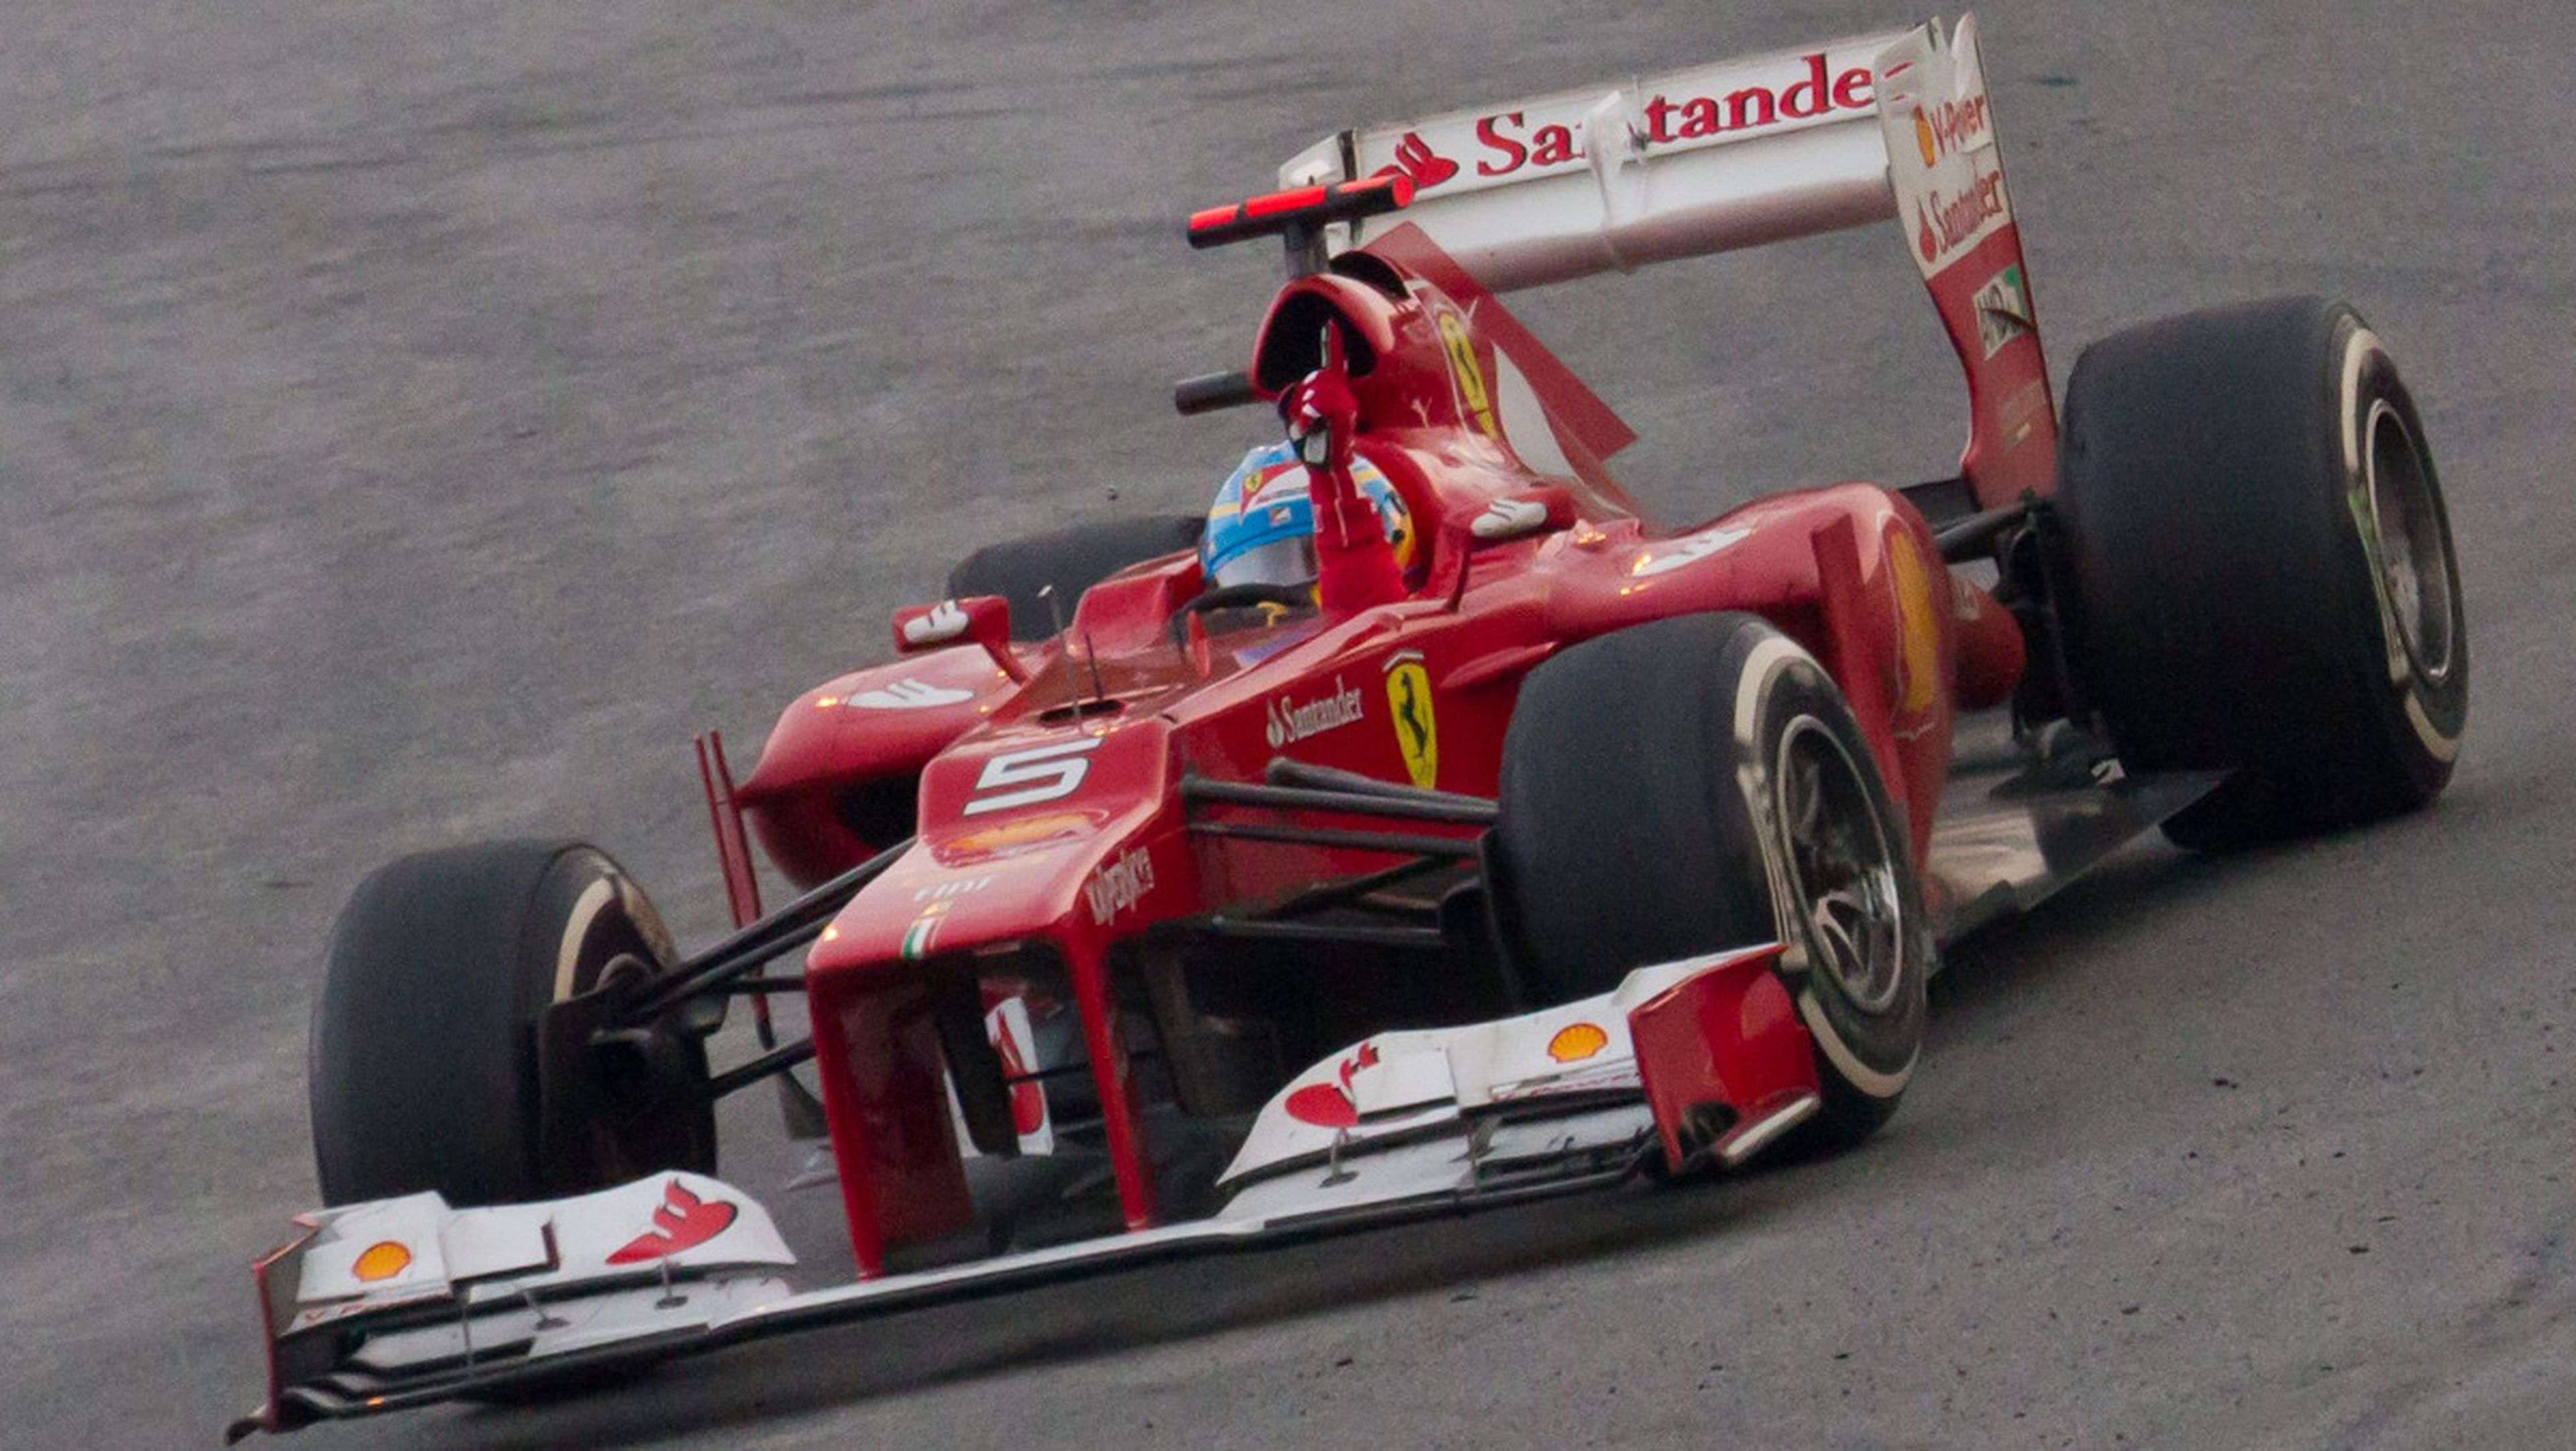 Alonso won Malaysian GP 2012